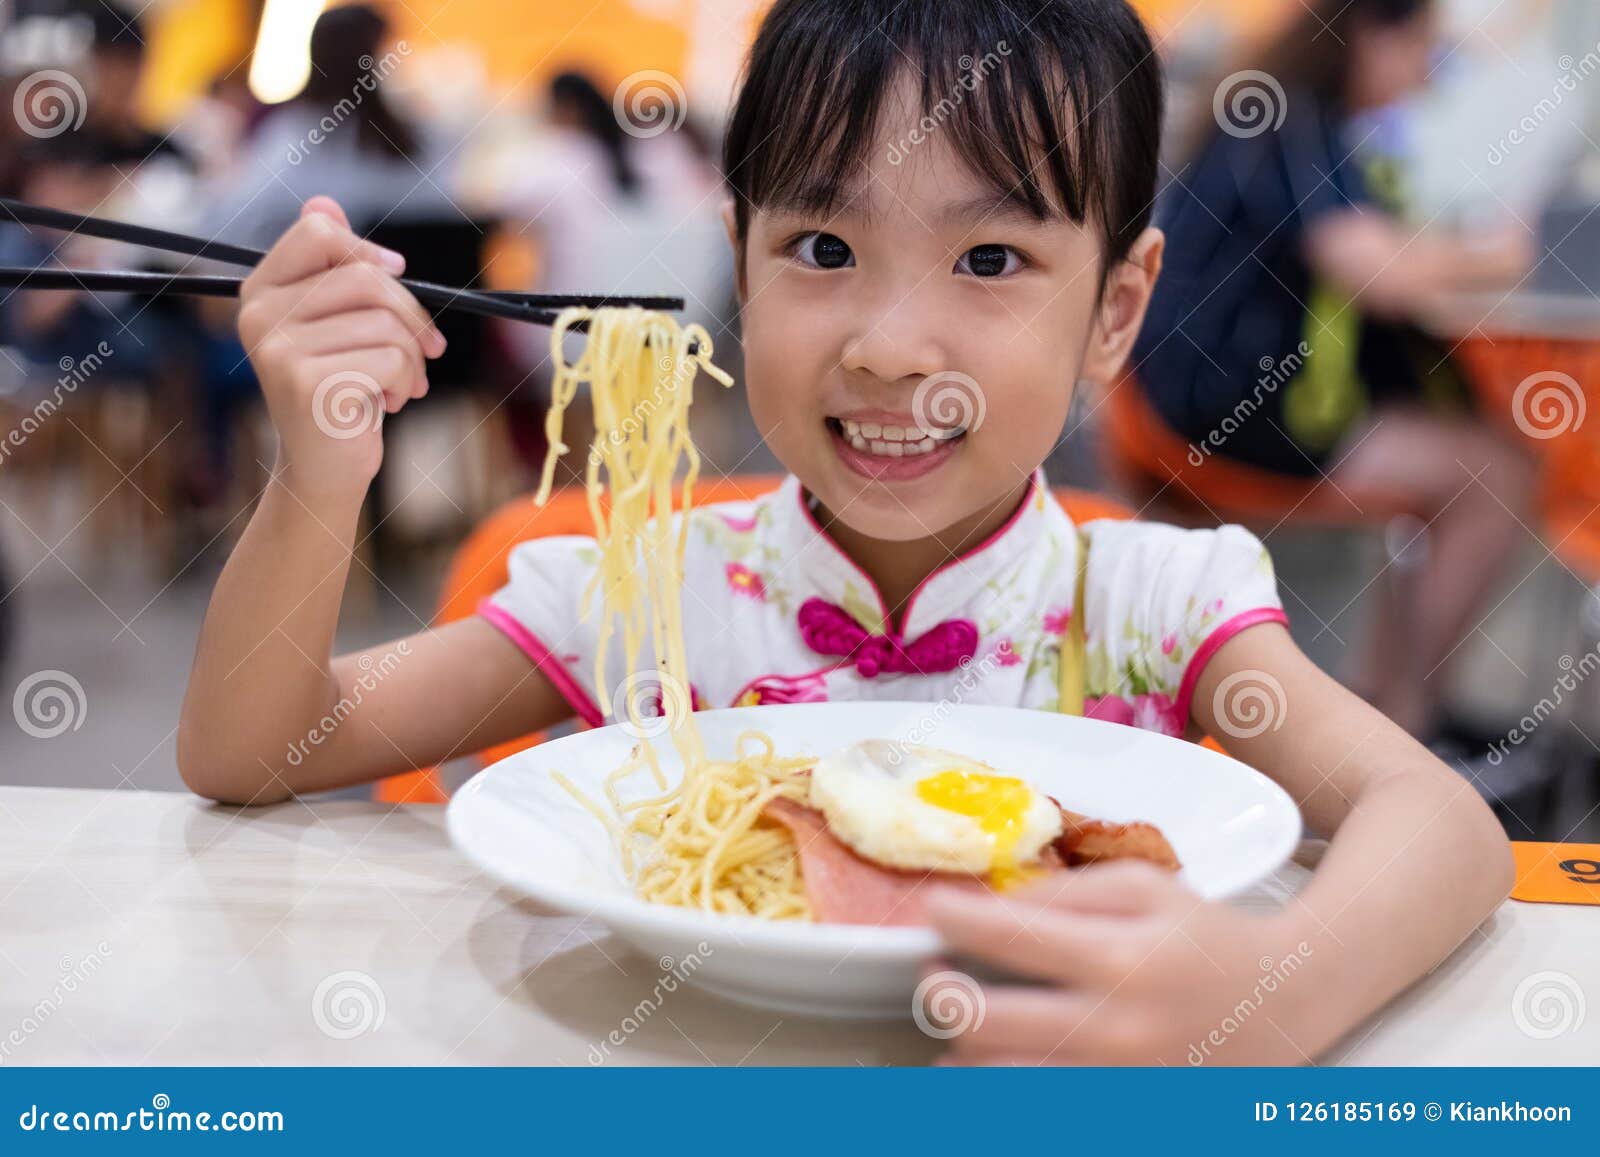 Я хочу есть по китайски. Китаец ест лапшу. Китайцы едят палочками. Азиатская девочка ест лапшу.